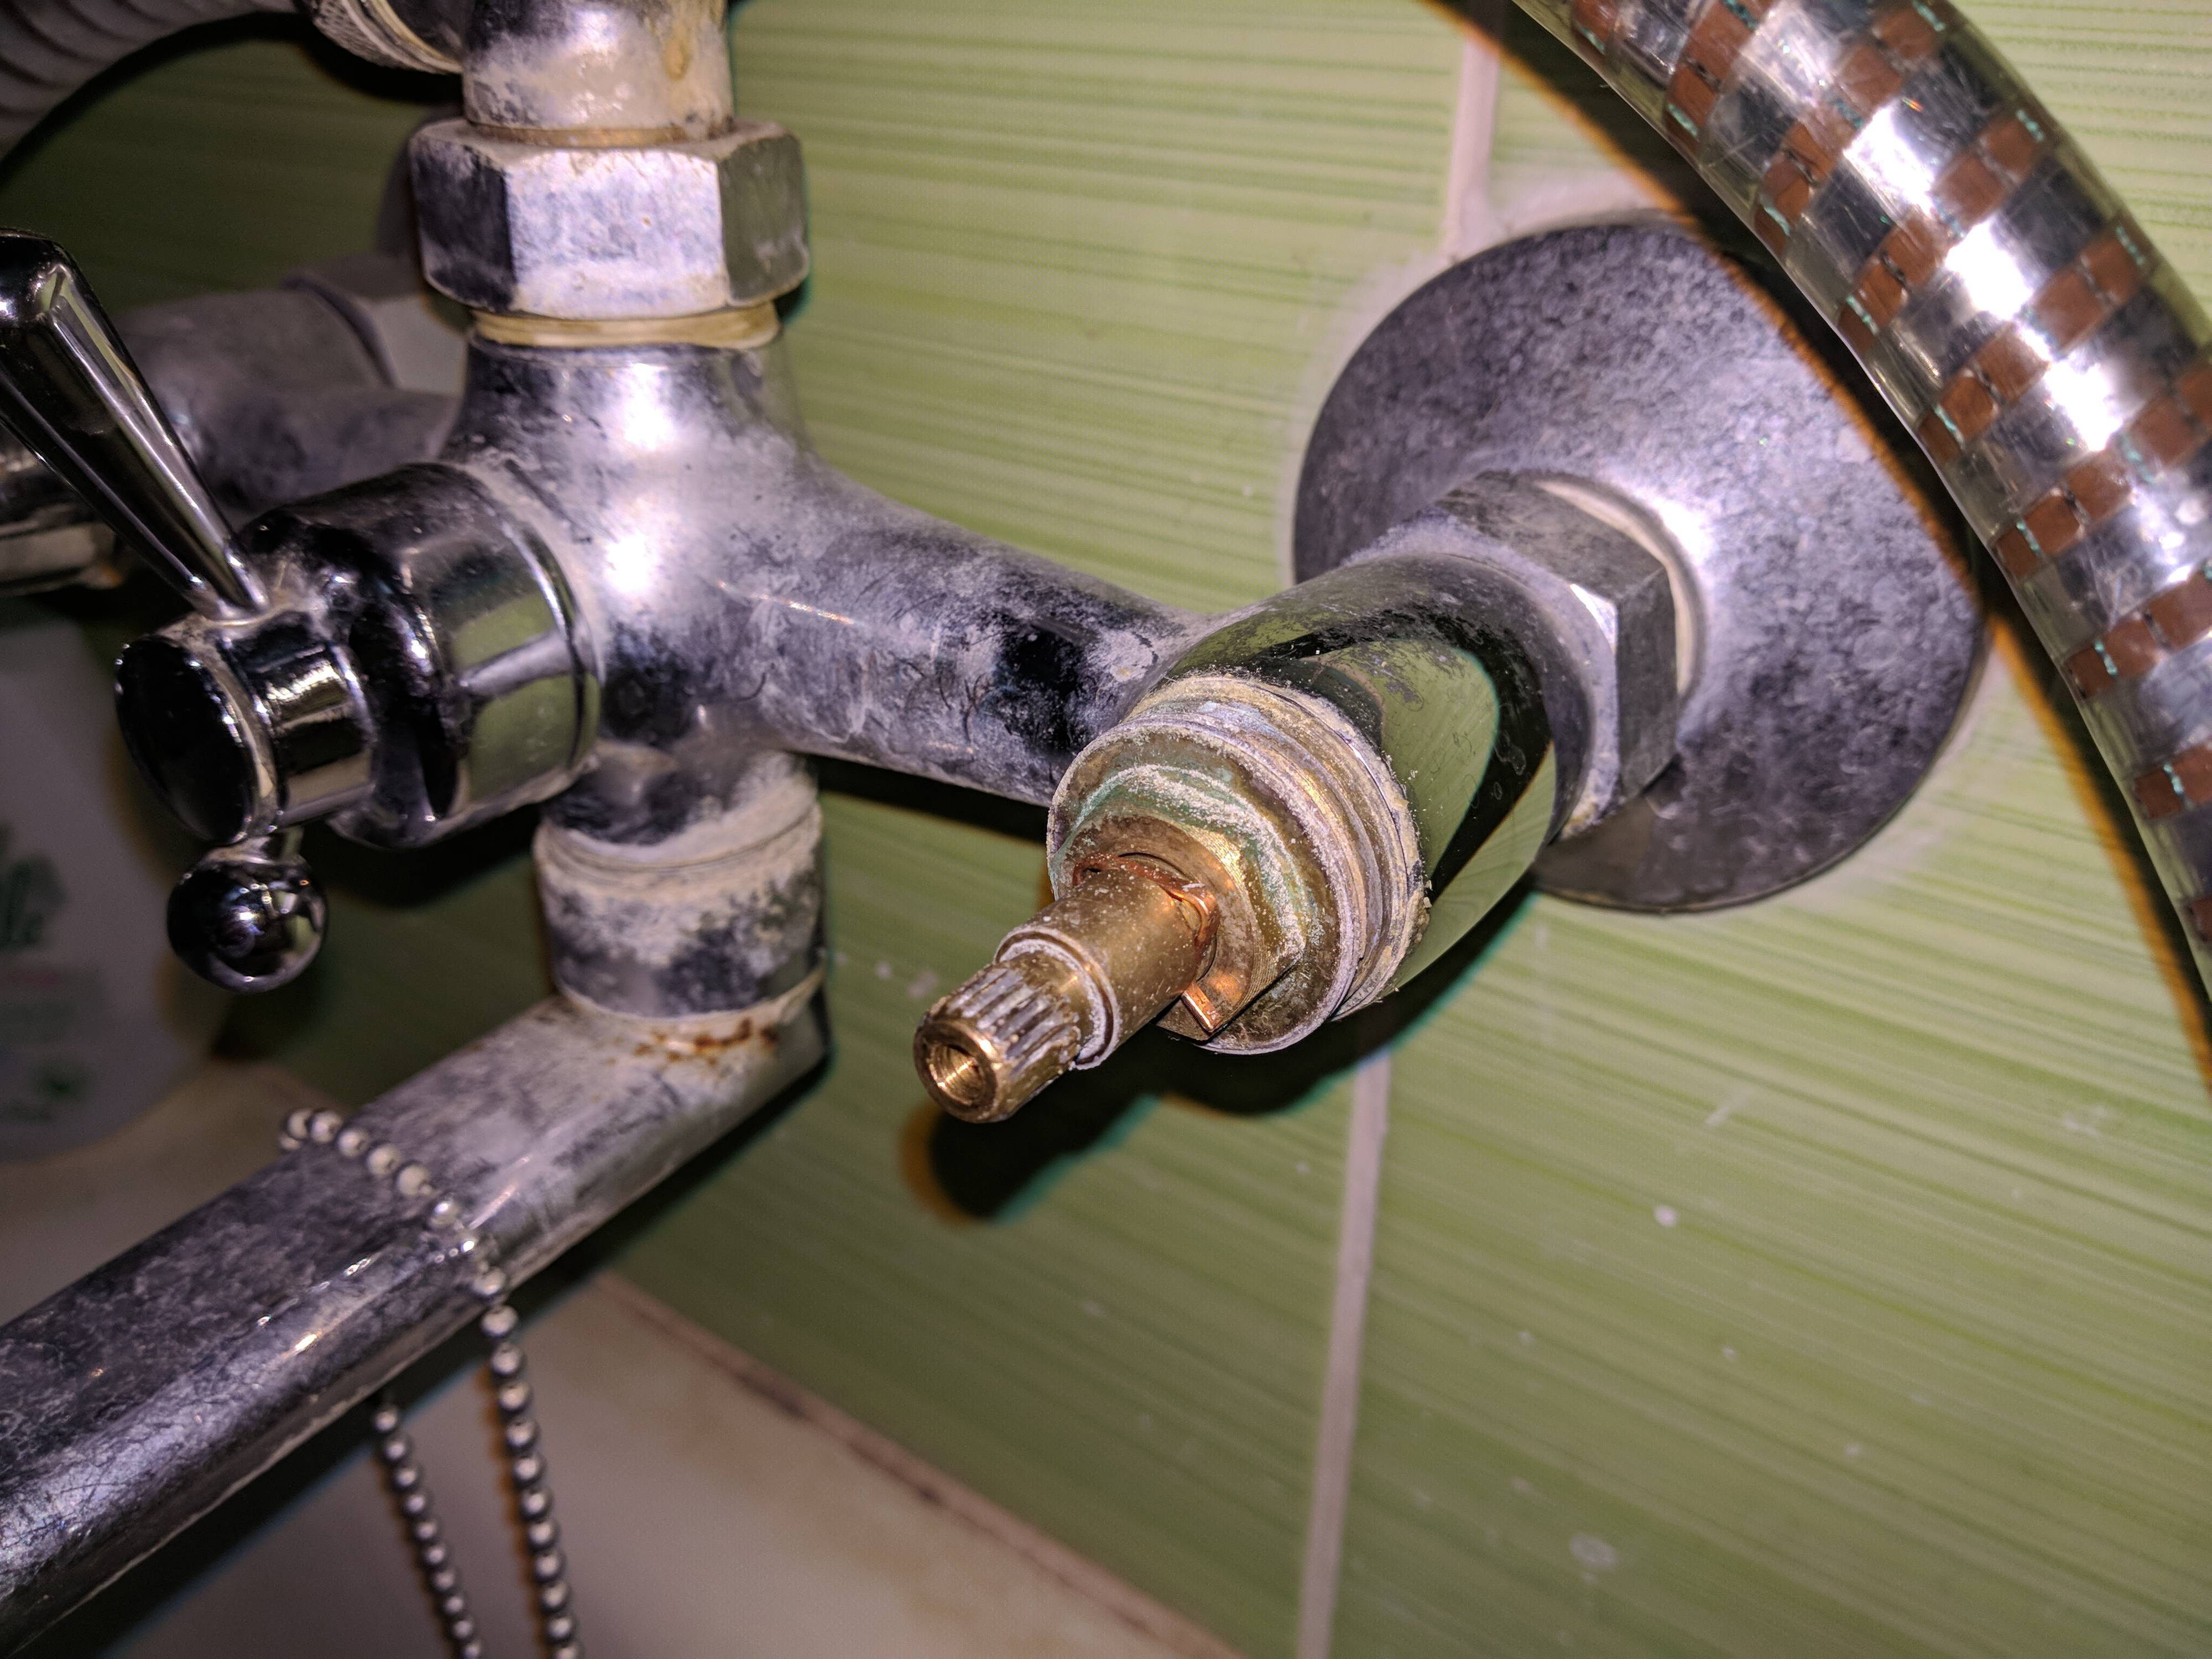 Как починить кран в ванной: простые способы устранения протечки (+фото) | дизайн и интерьер ванной комнаты